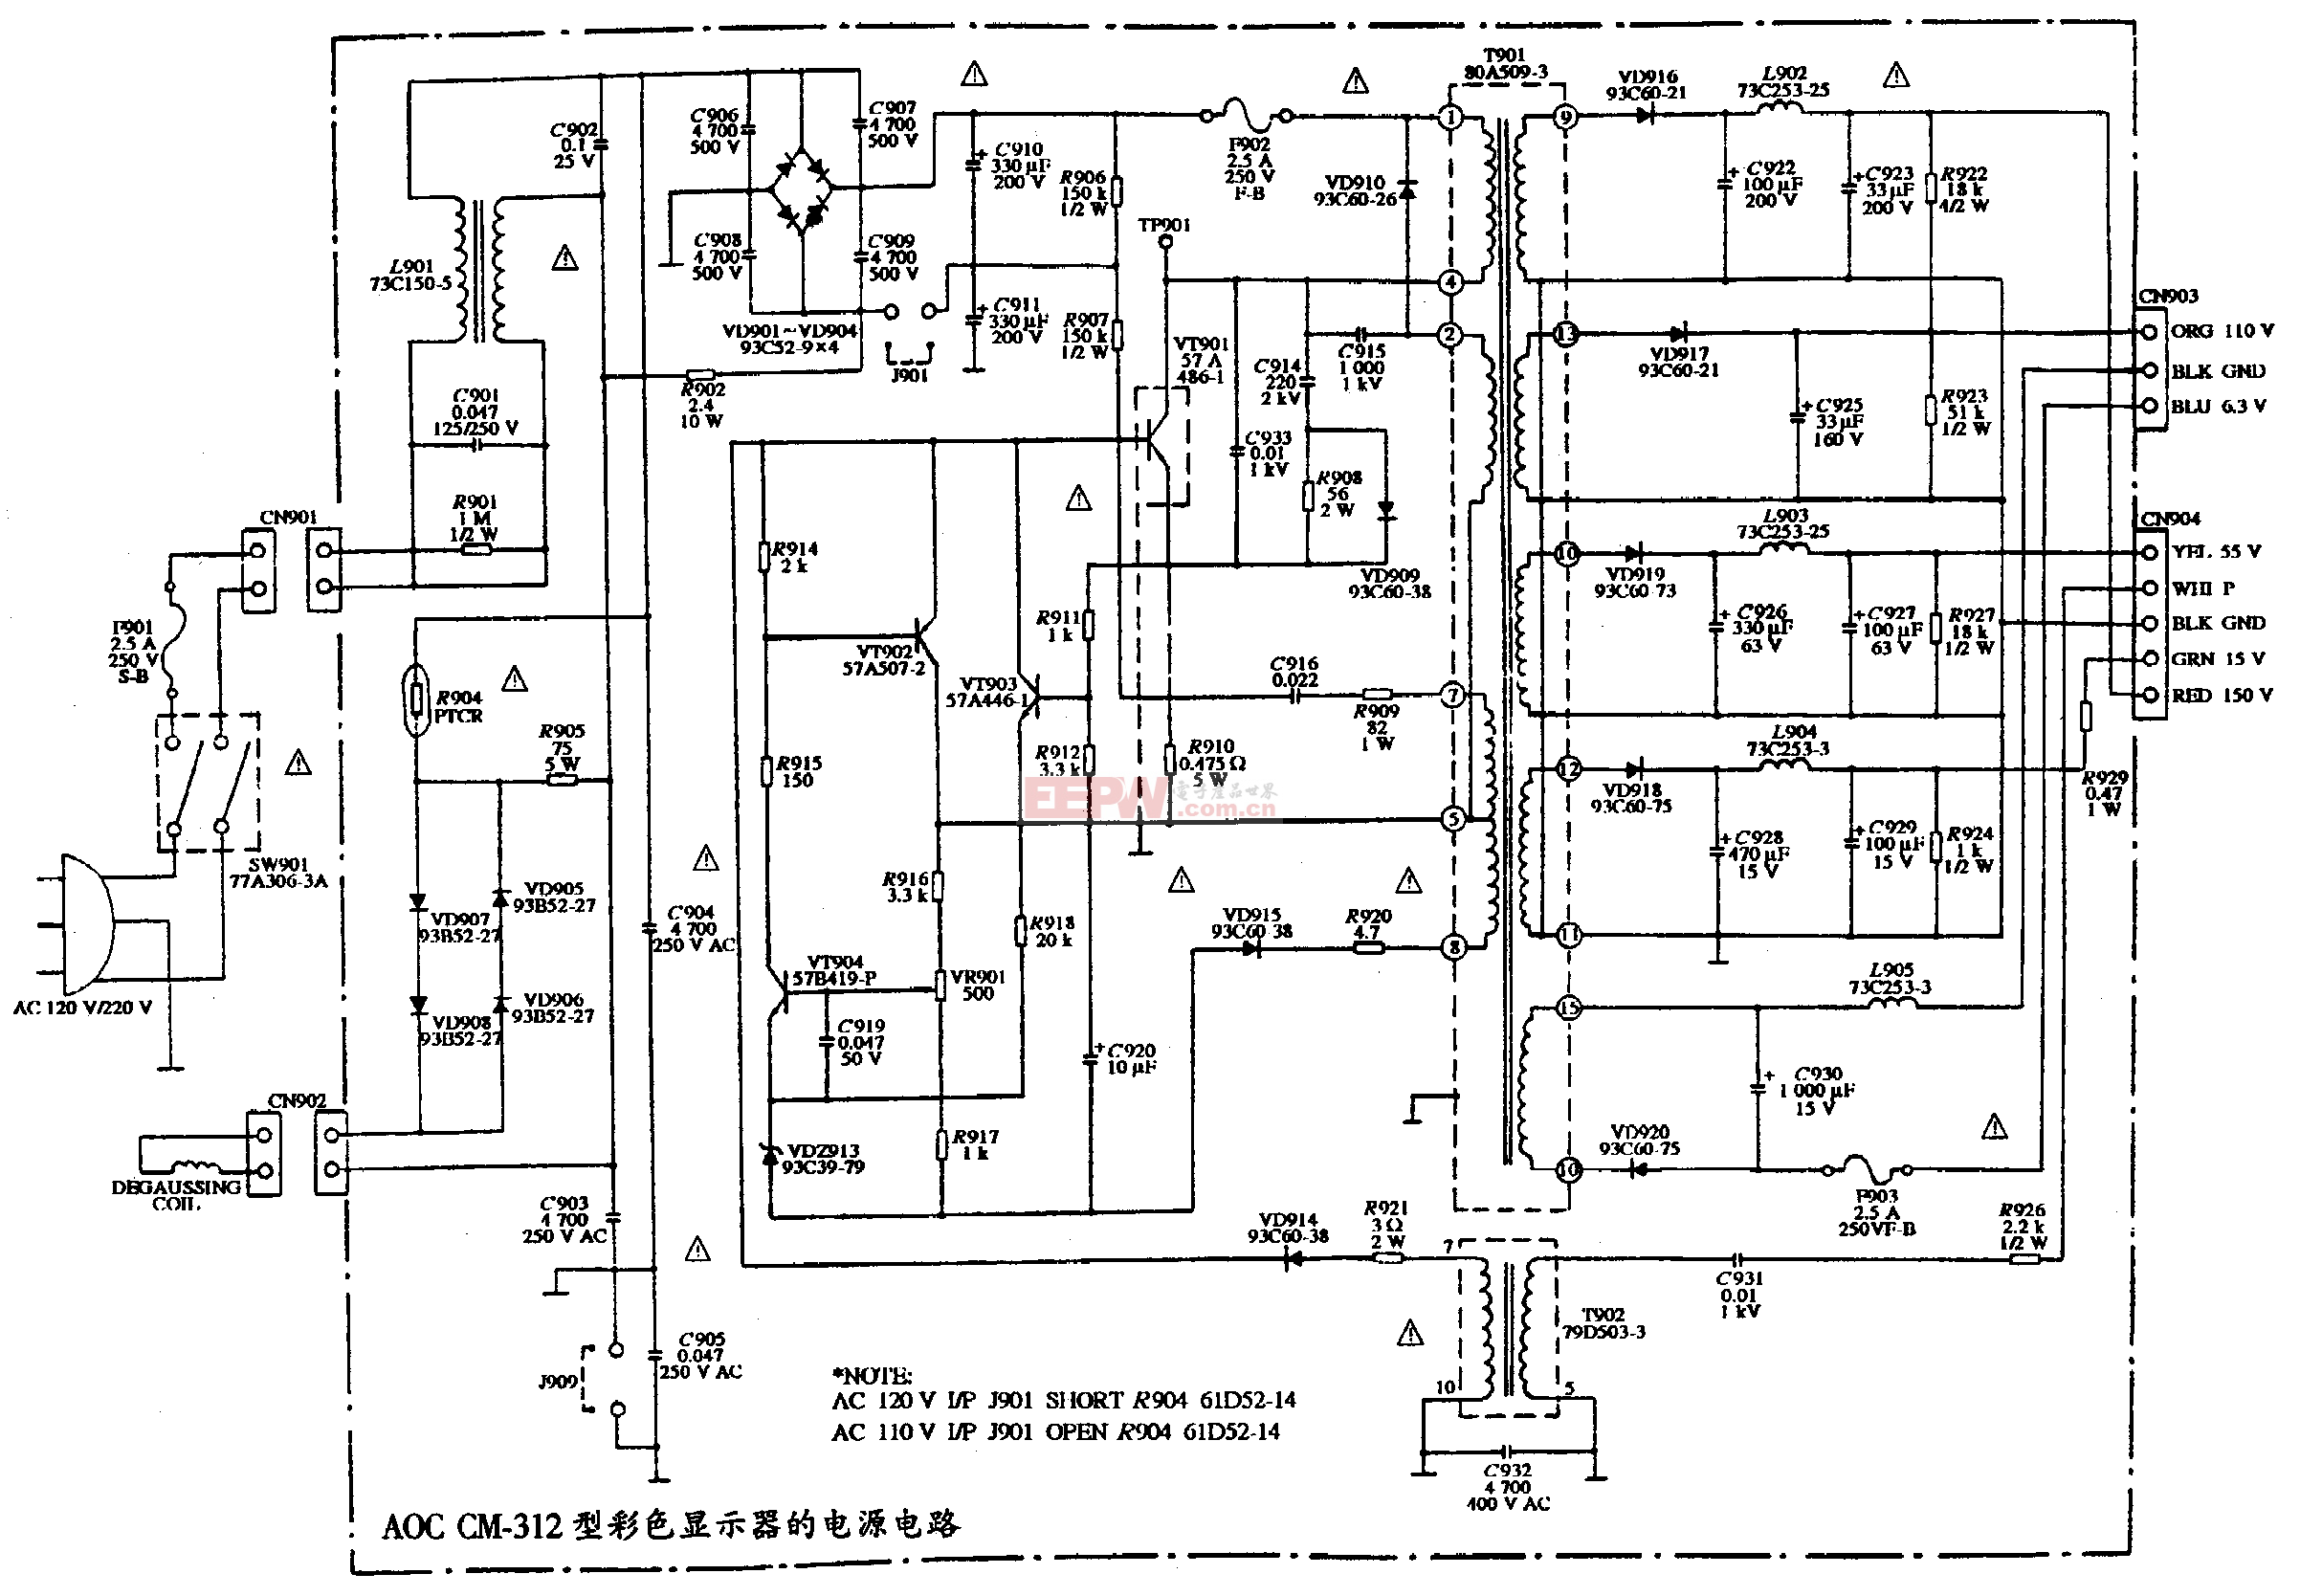 1、AOC CM-312型彩色显示器的电源电路图